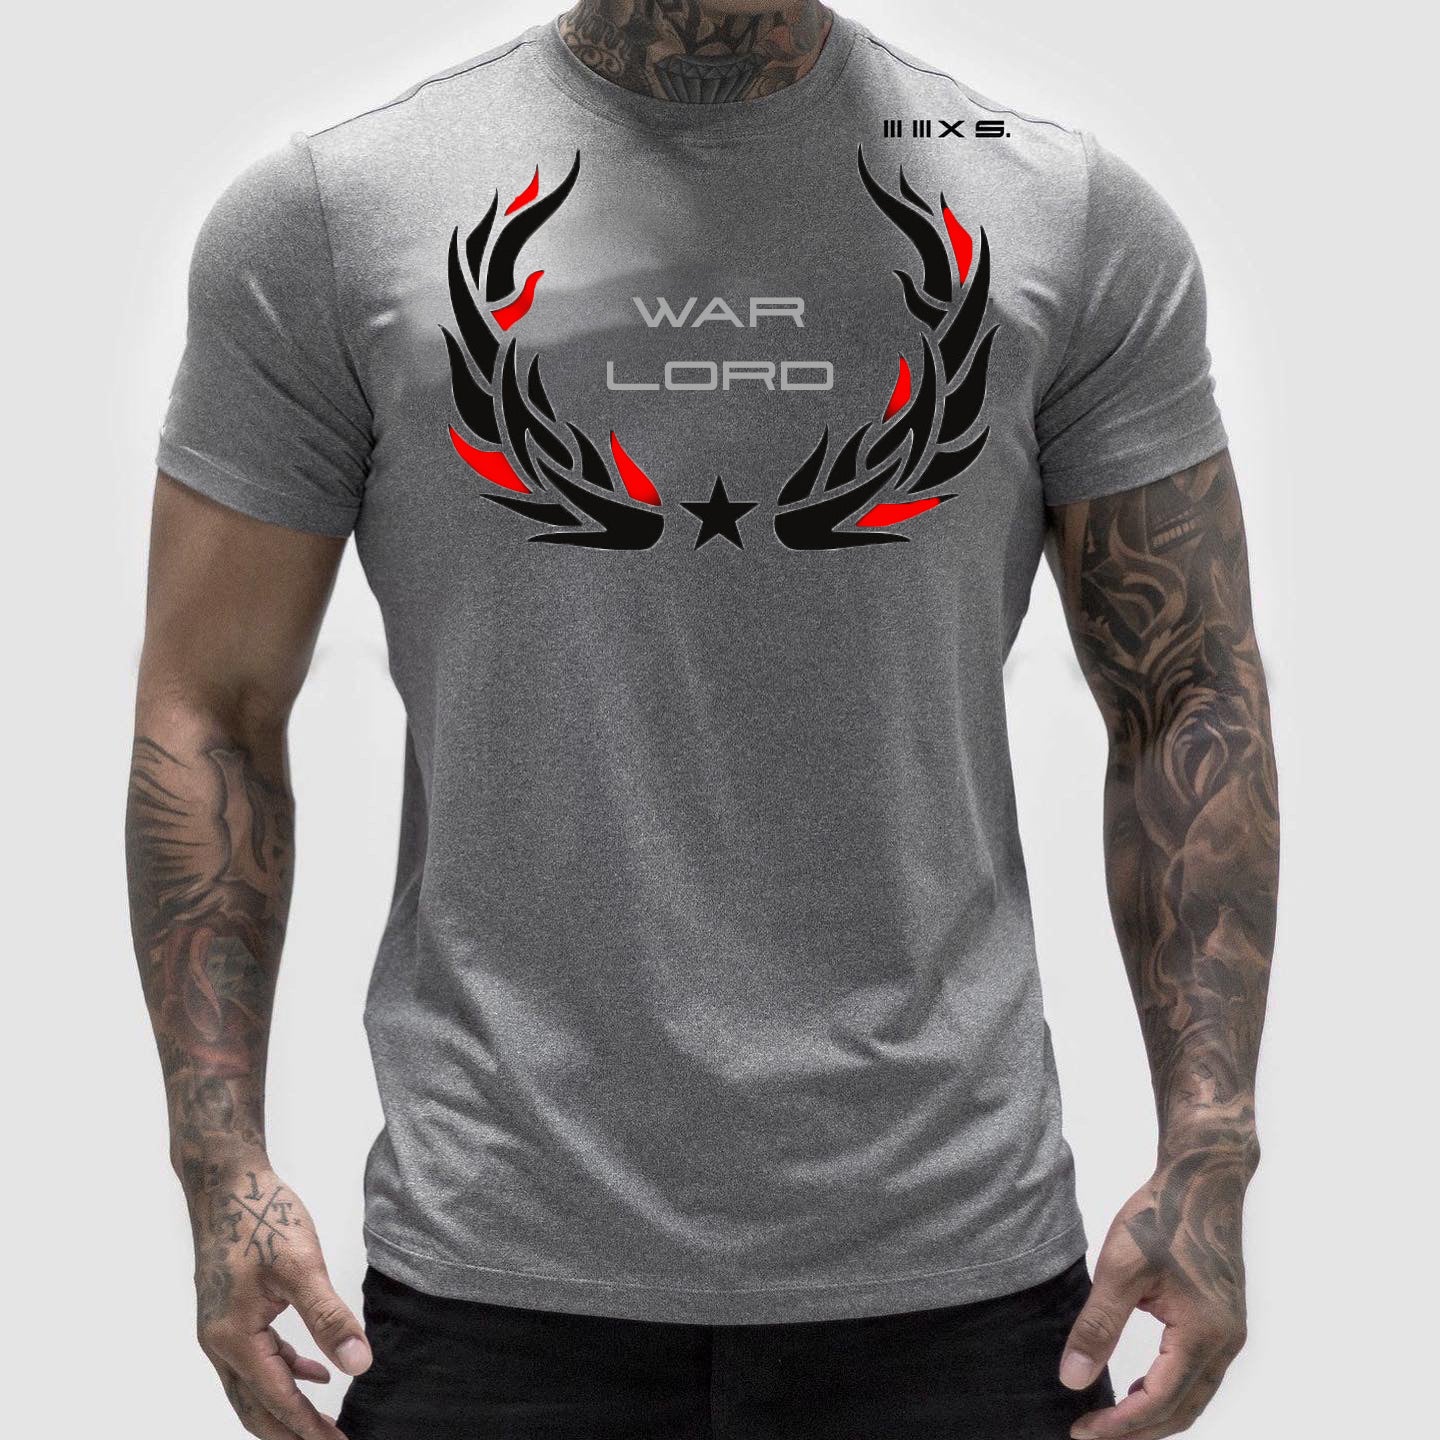 WAR LORD Grey short sleeve tshirt